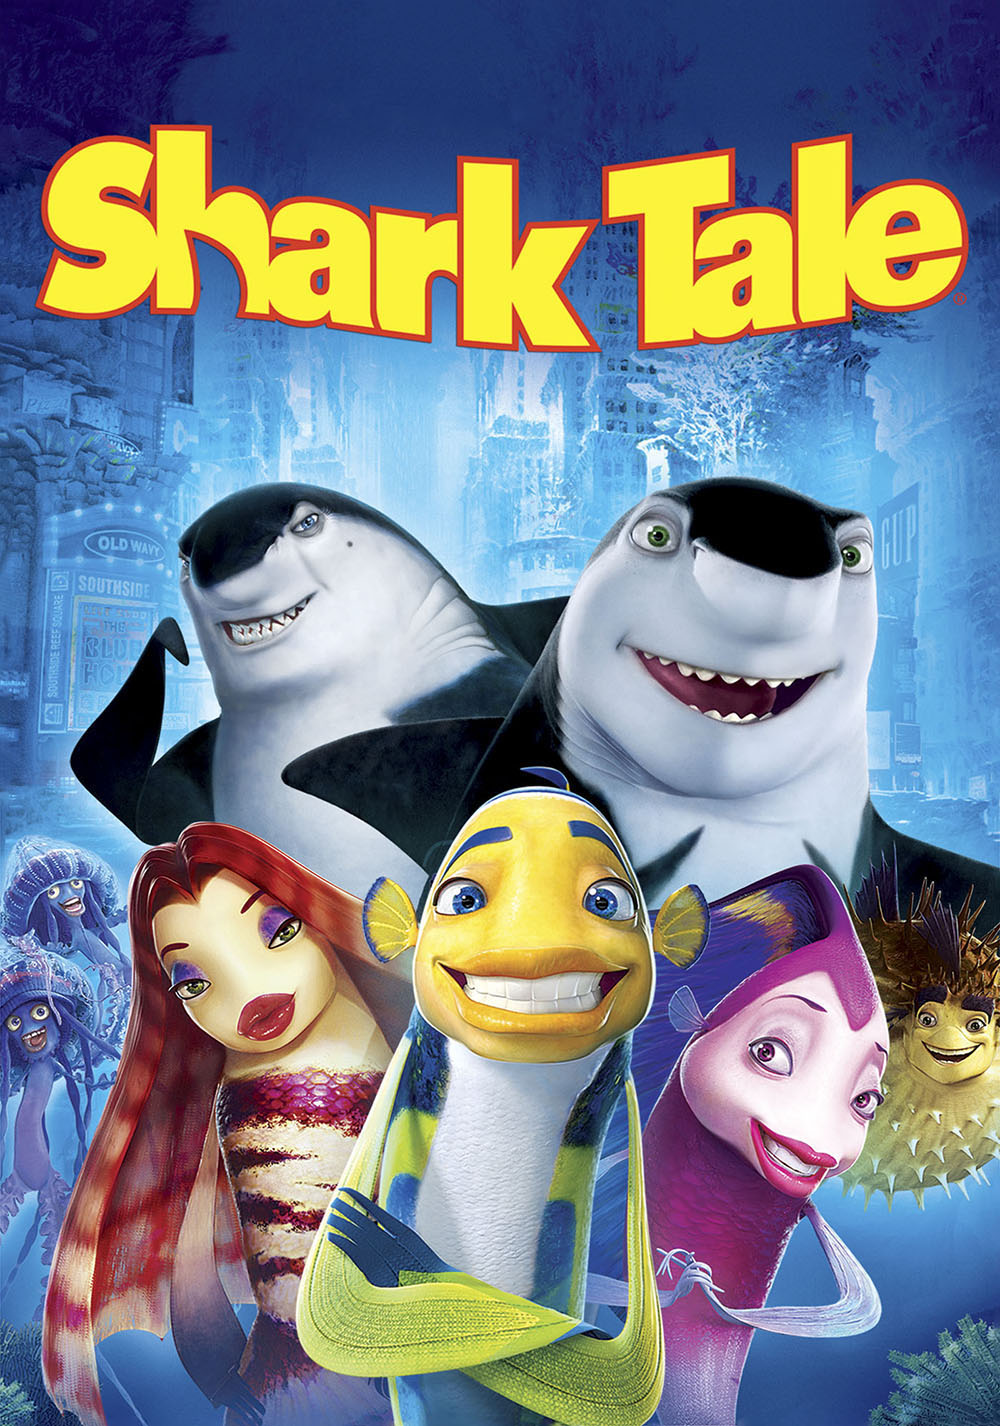 Stiahni si Filmy Kreslené Příběh žraloka / Shark Tale (2004)(CZ/EN)[1080p] (Oprava Zvukévé stopy CZ) = CSFD 65%